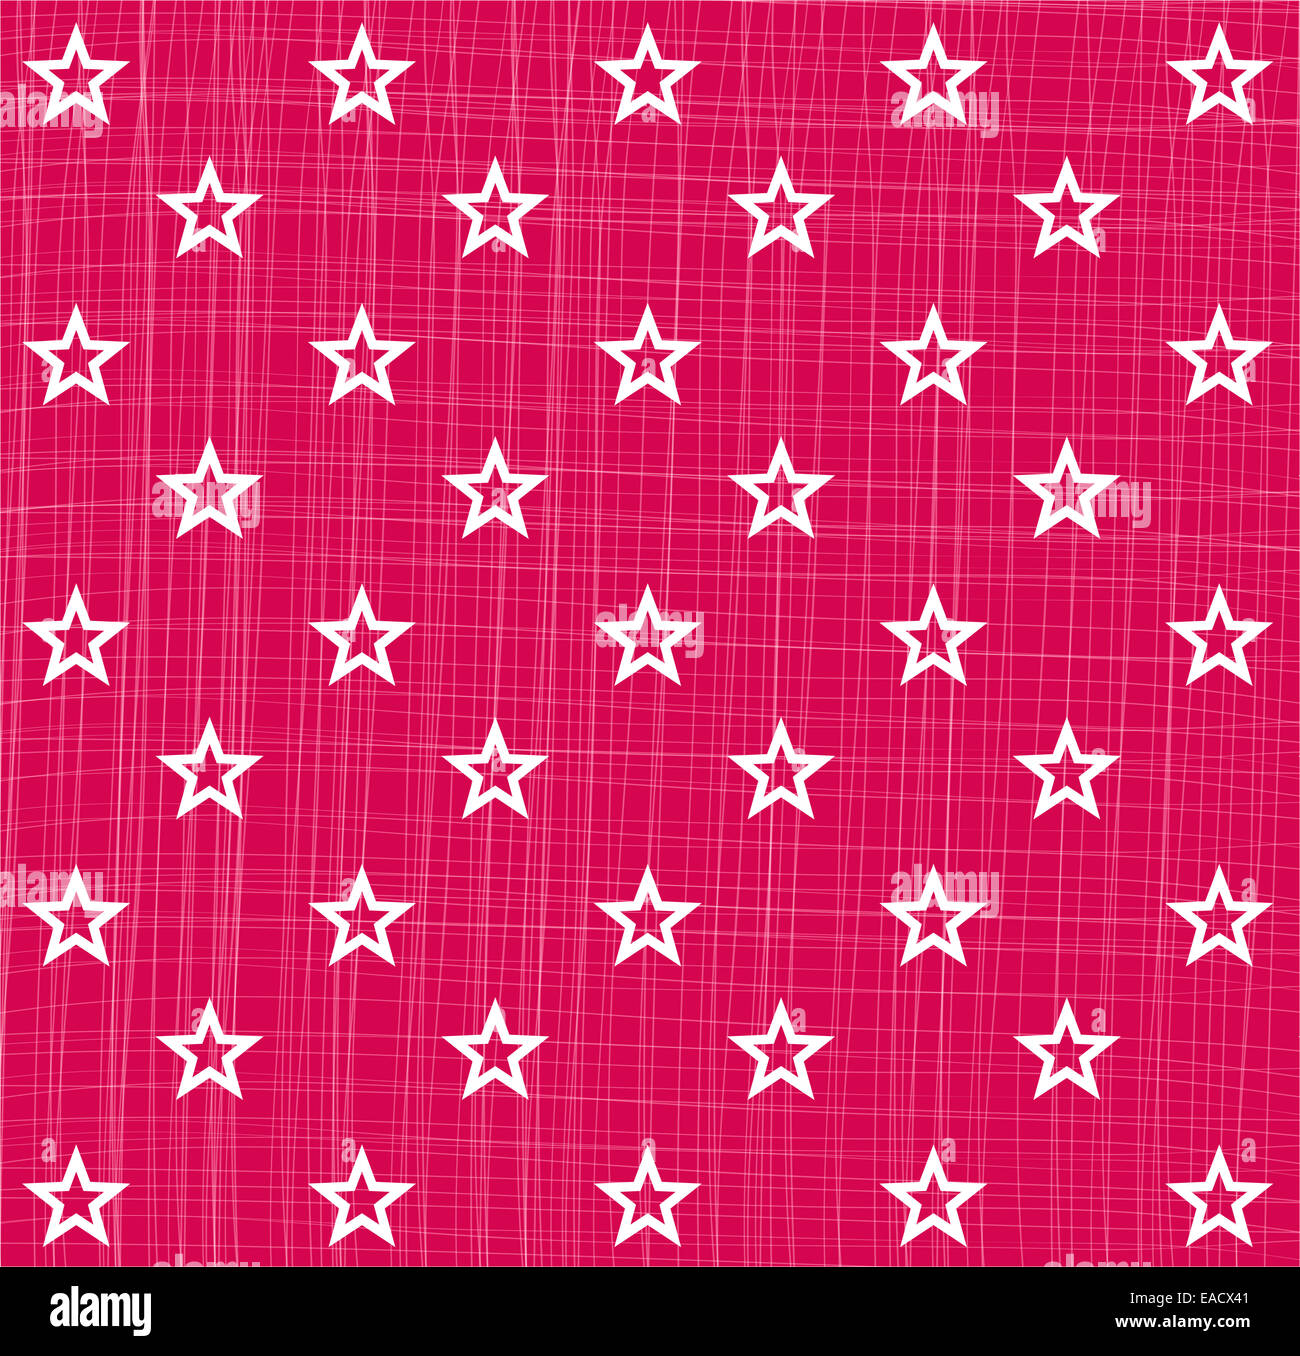 Stern Sterne Sternmuster Muster Pattern Sternenmuster pink Kontur Struktur Hintergrund Weihnachten Christmas Heilig Abend Grafik Stock Photo